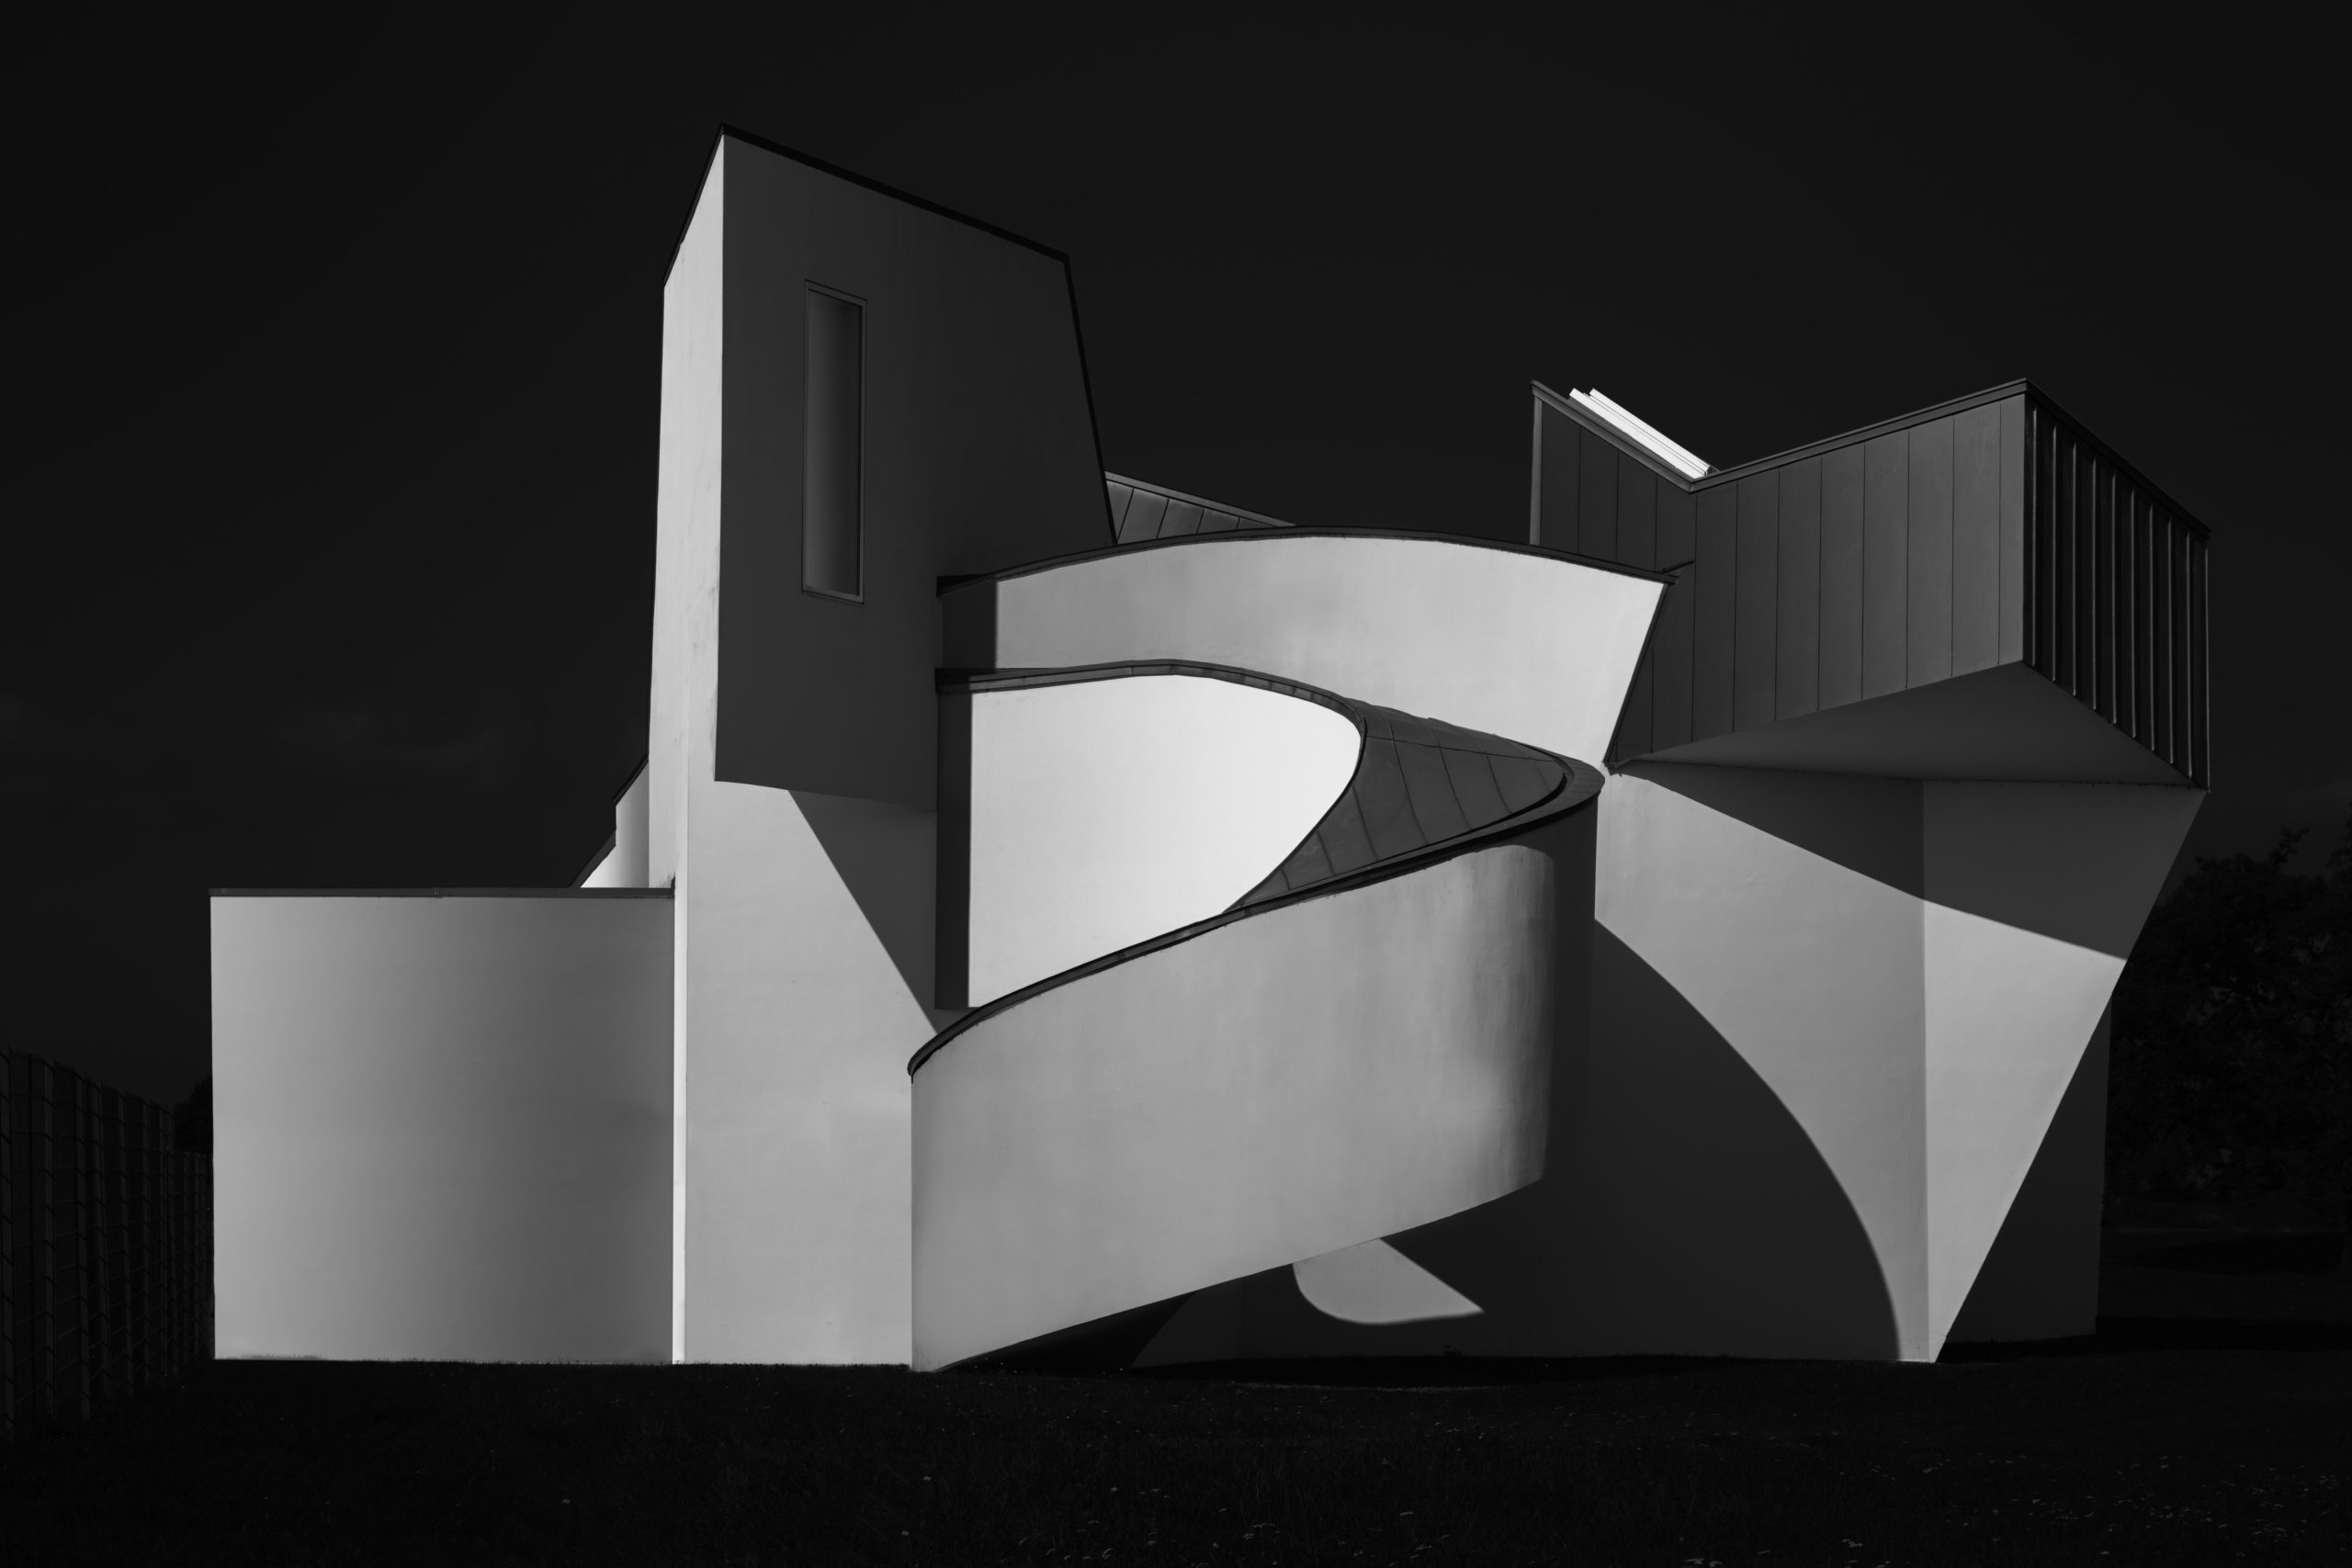 Moderne Architektur in schwarzweiß